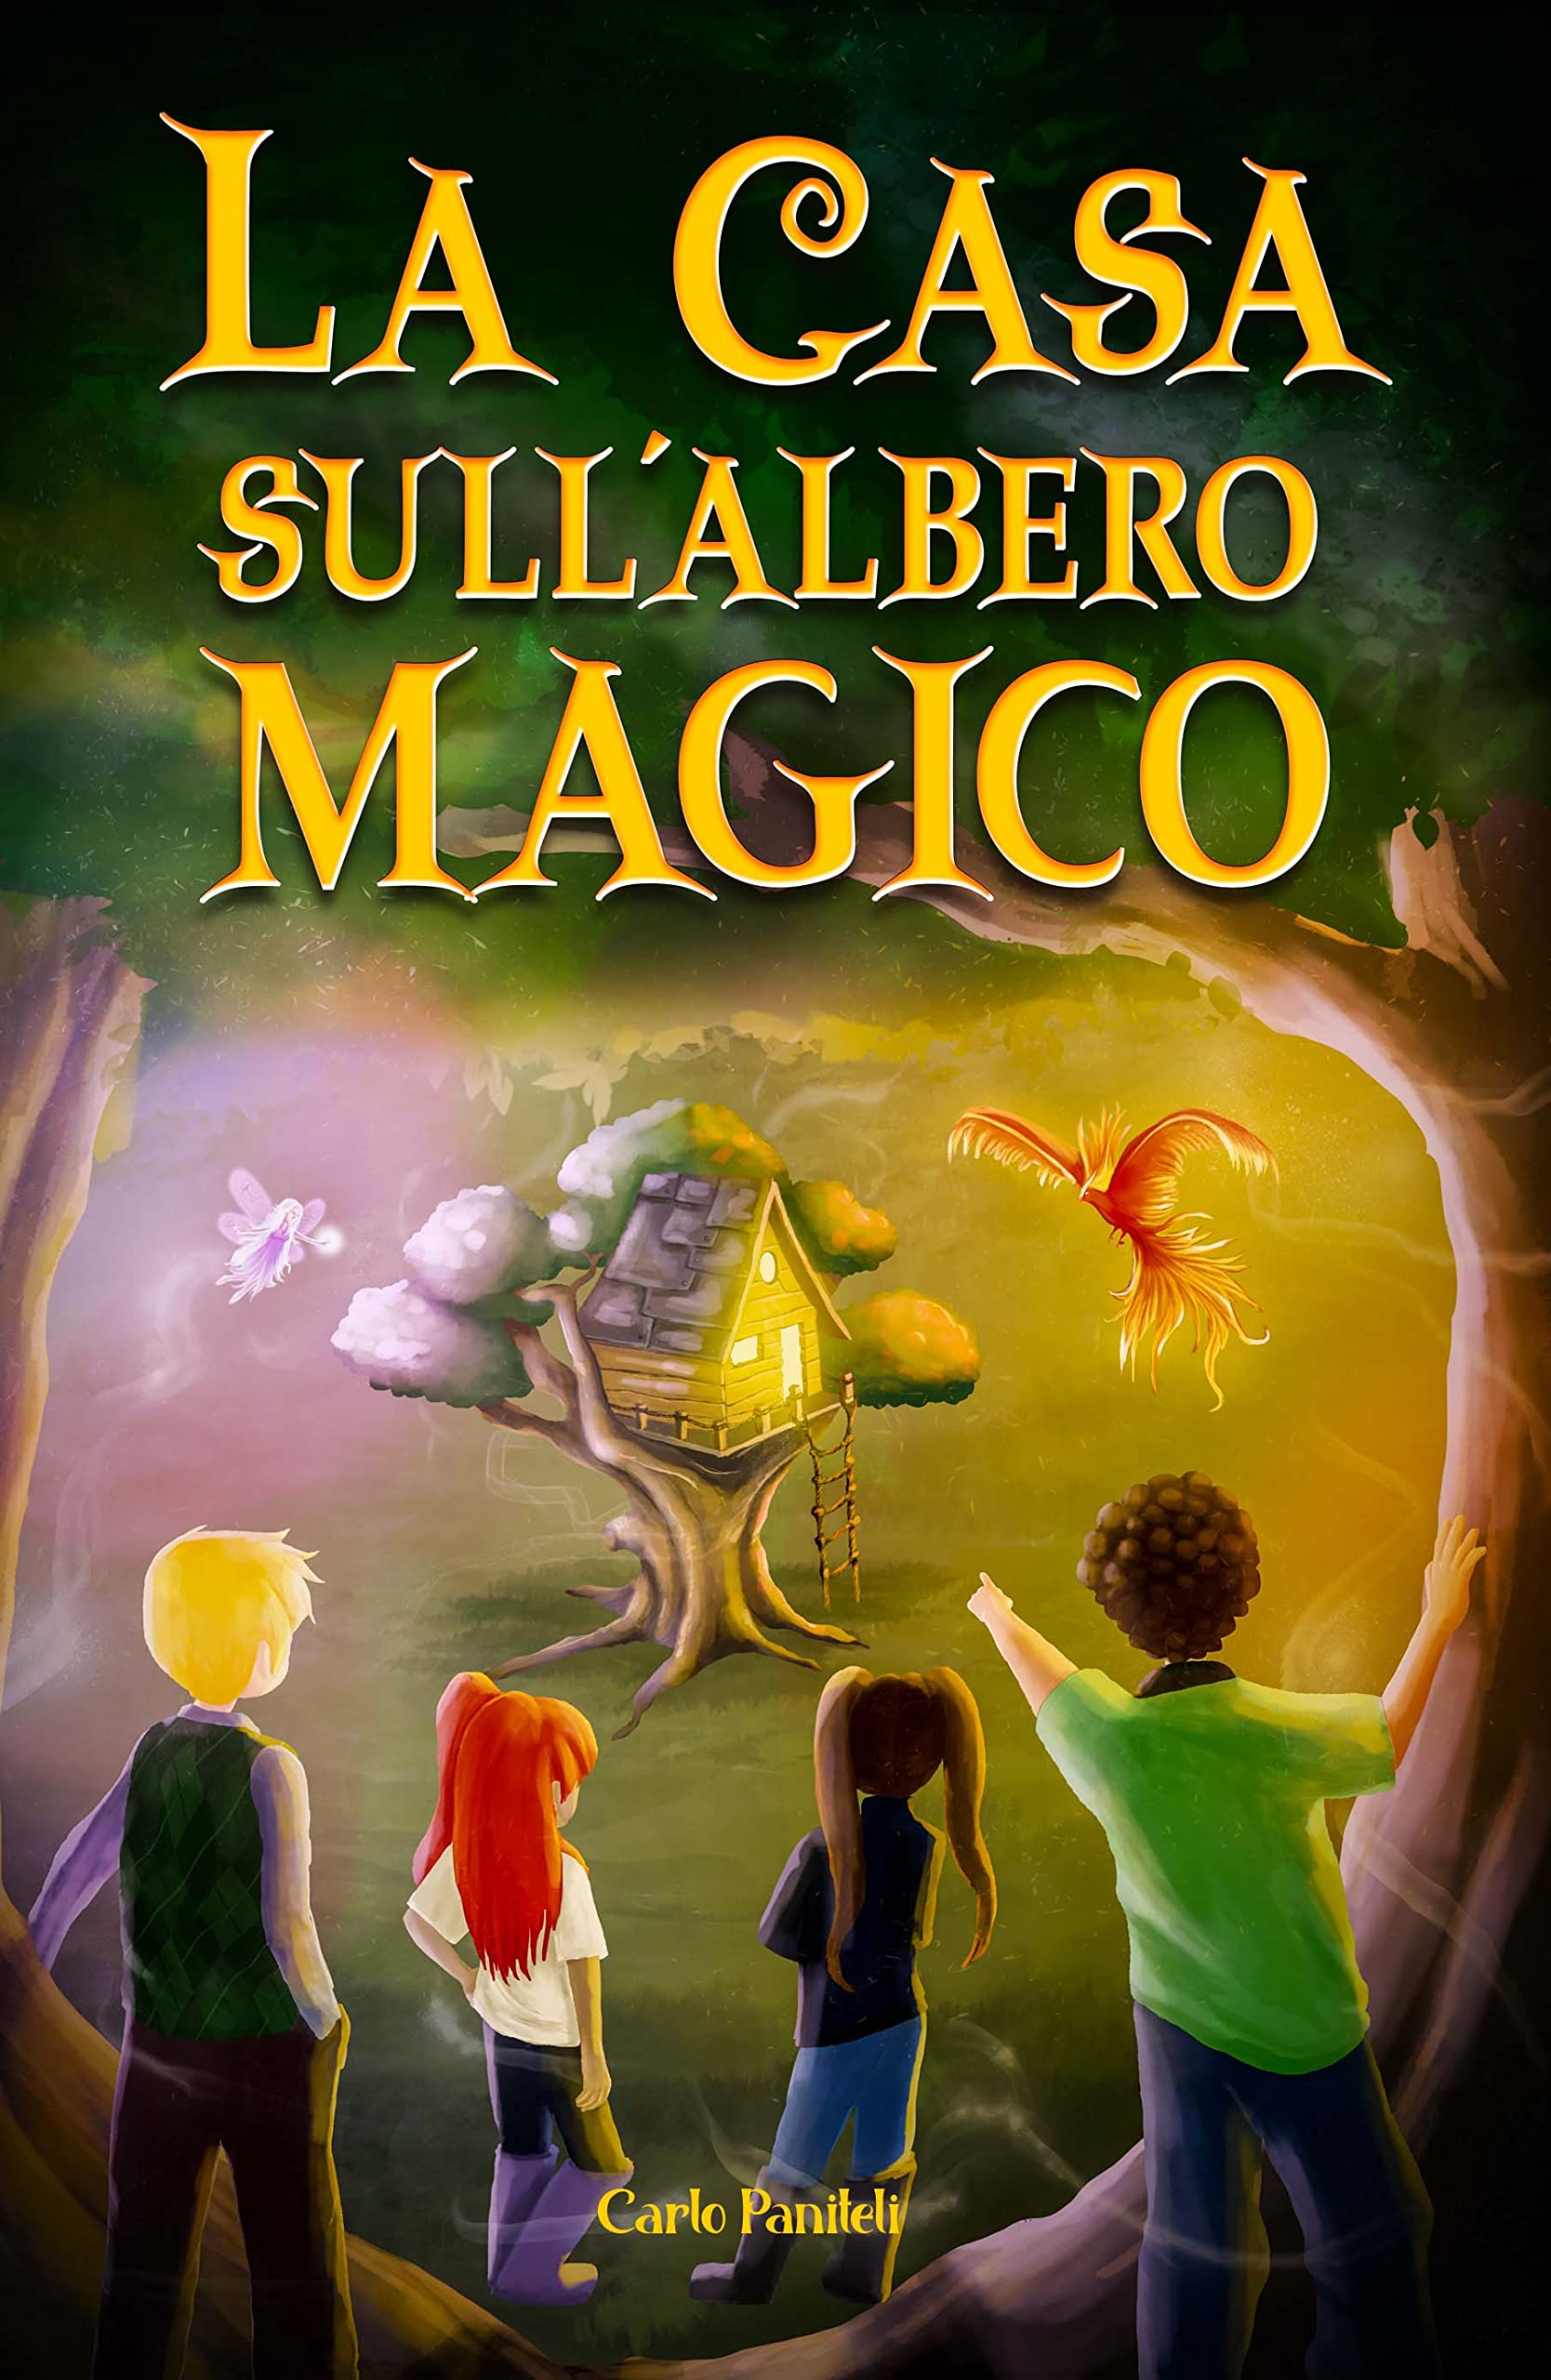 La casa sull'albero magico: L'avventura di quattro amici: Libri per bambini (Italian Edition)